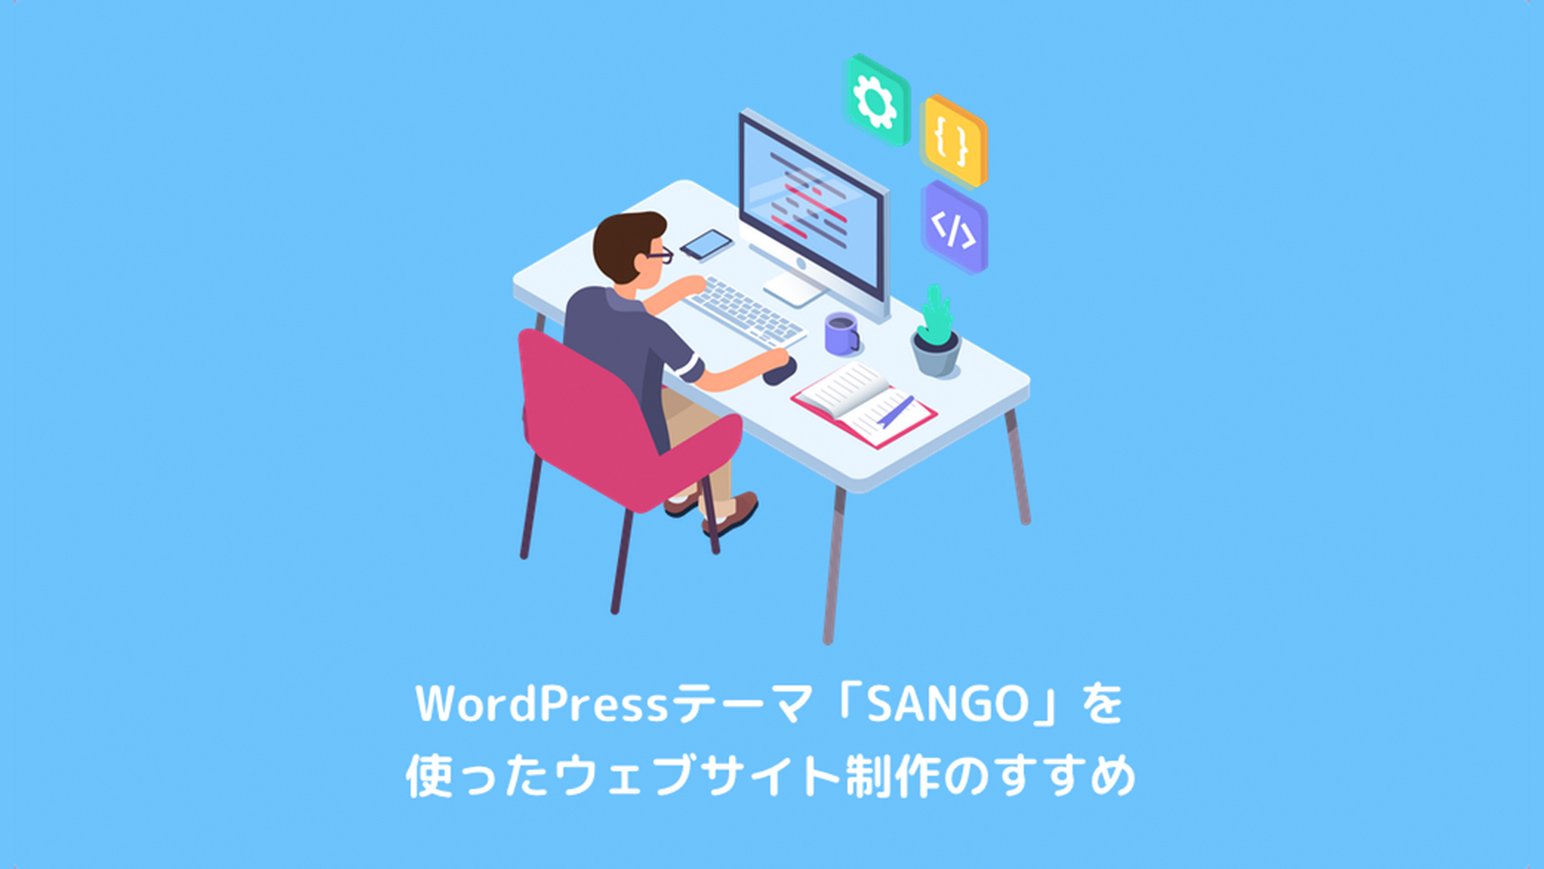 WordPressテーマ「SANGO」を使ったウェブサイト制作のすすめのアイキャッチ